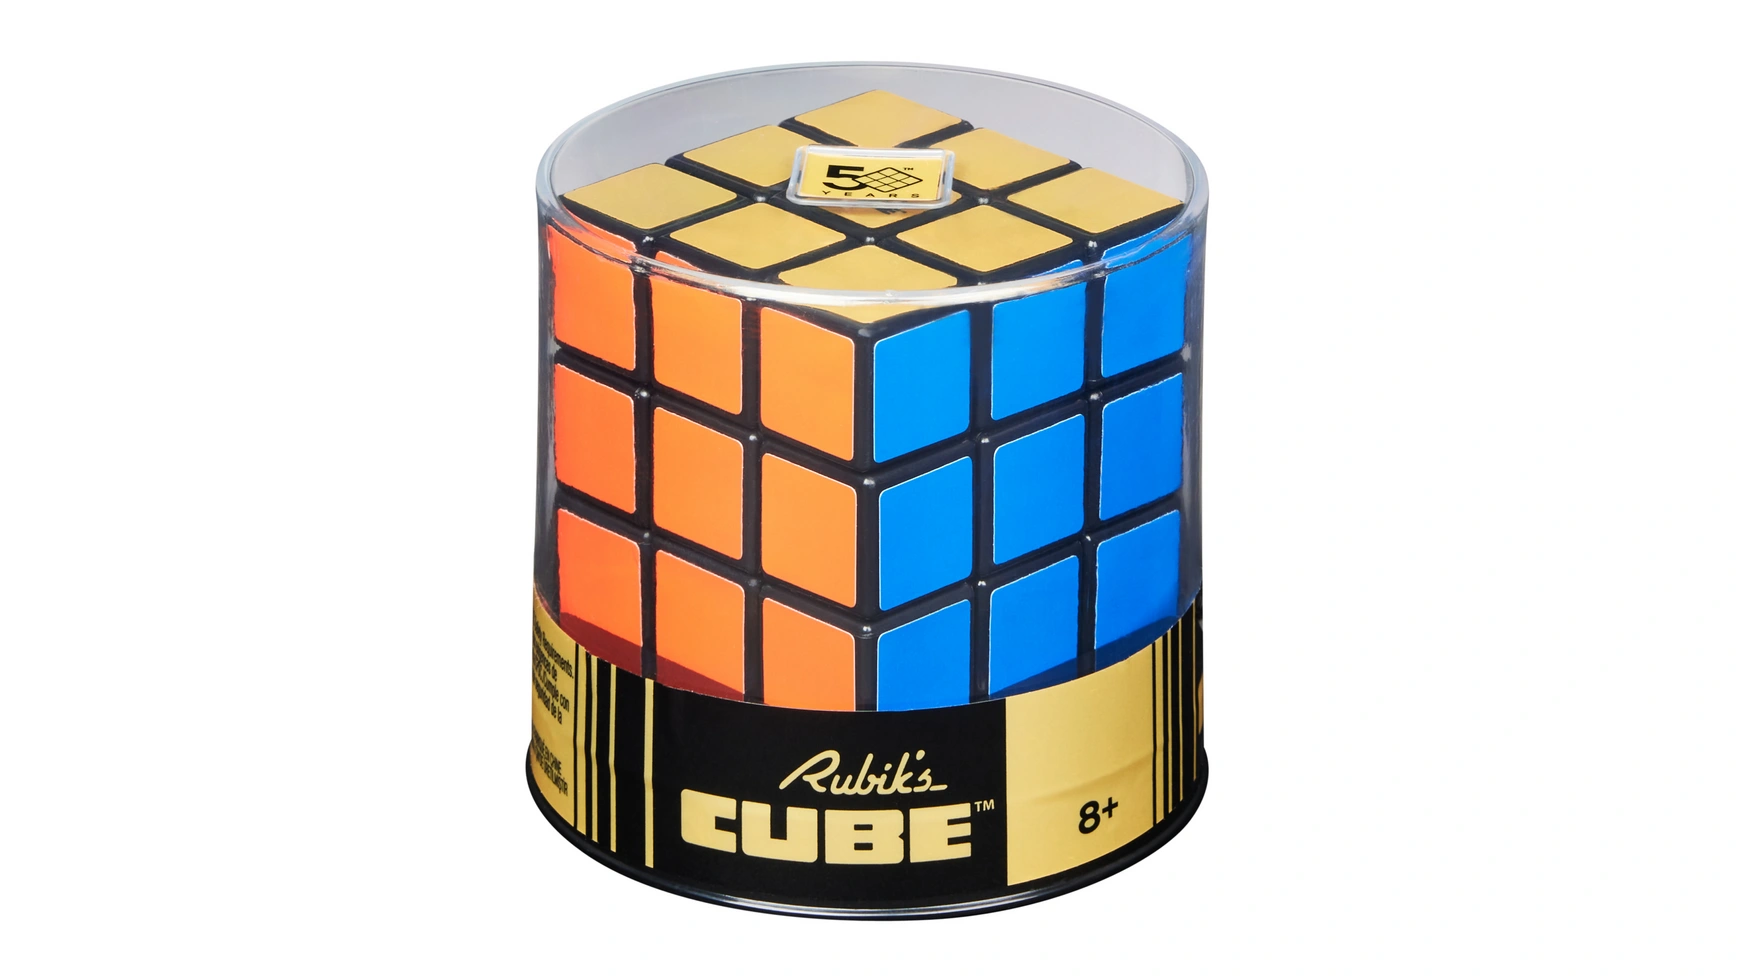 Ретро-кубик Рубика 3x3 Кубик Рубика кубик 3x3, внешний вид которого напоминает оригинал 50-летней давности Spin Master коллекция кубиков кленовые листья магический куб пазл кубик класс обучающие игрушки кубик 3x3 магнитный бесплатная доставка eduke игрушка